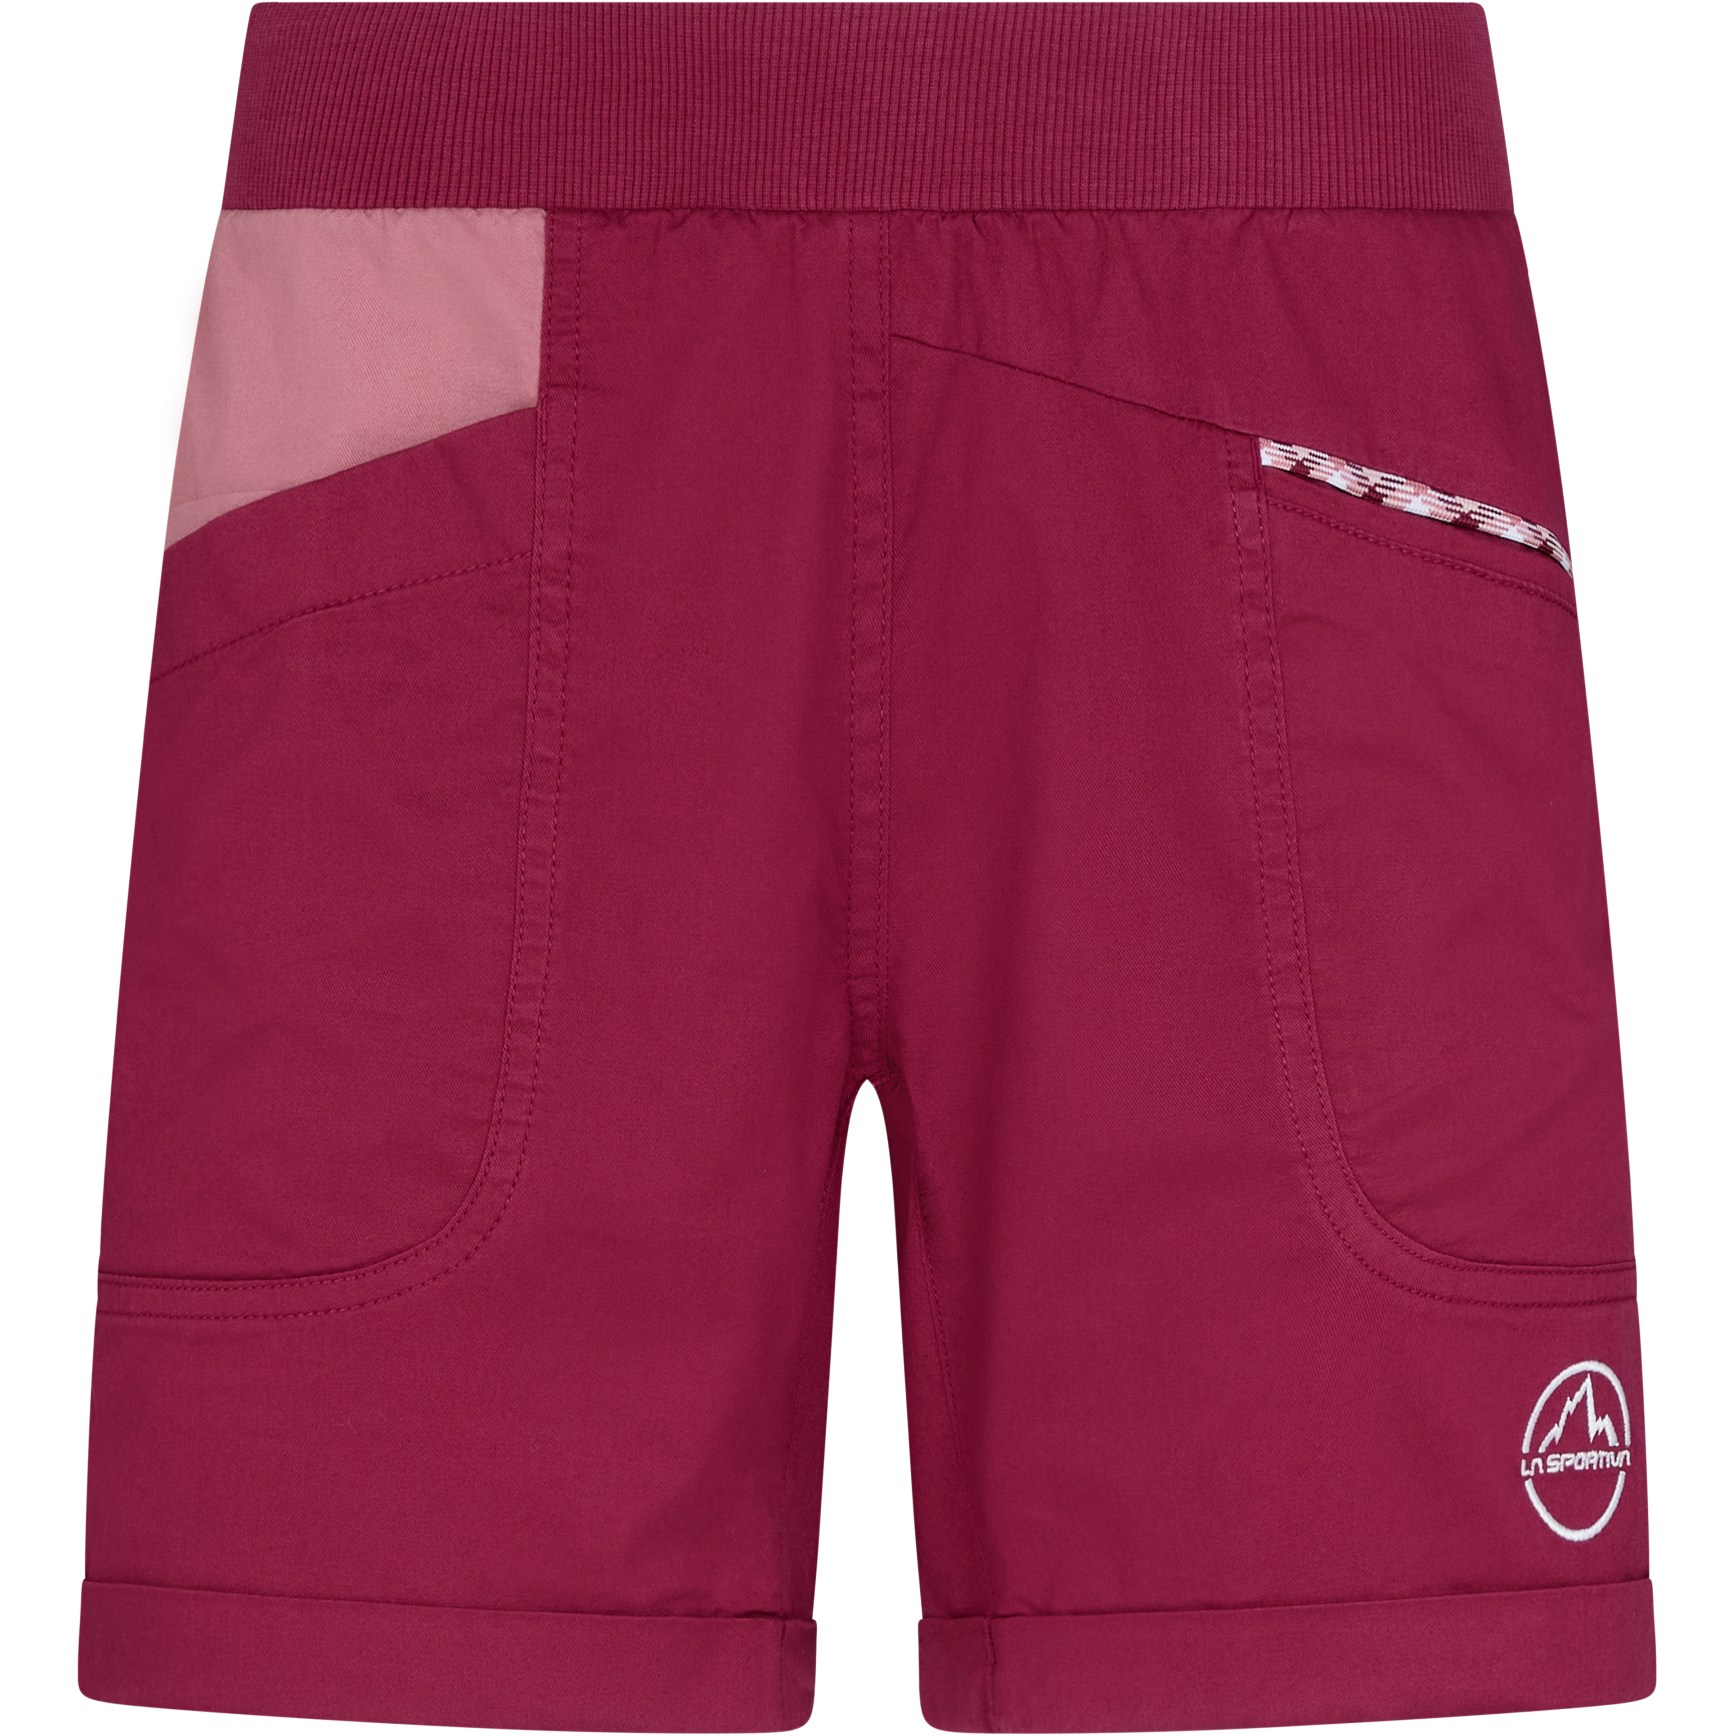 Produktbild von La Sportiva Ramp Shorts Damen - Red Plum/Blush